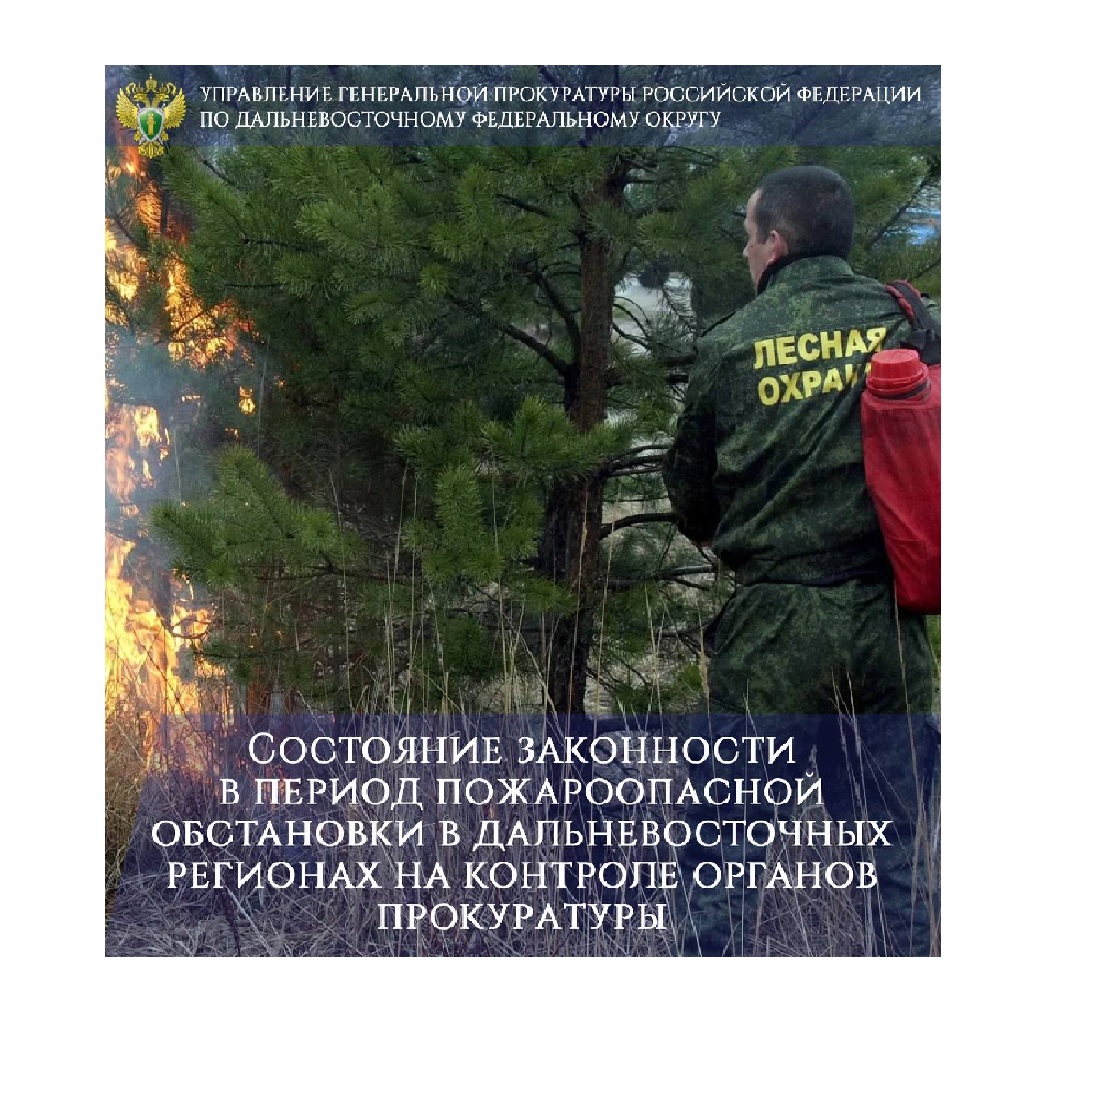 Состояние законности в период пожароопасной обстановки в дальневосточных регионах на контроле органов прокуратуры.